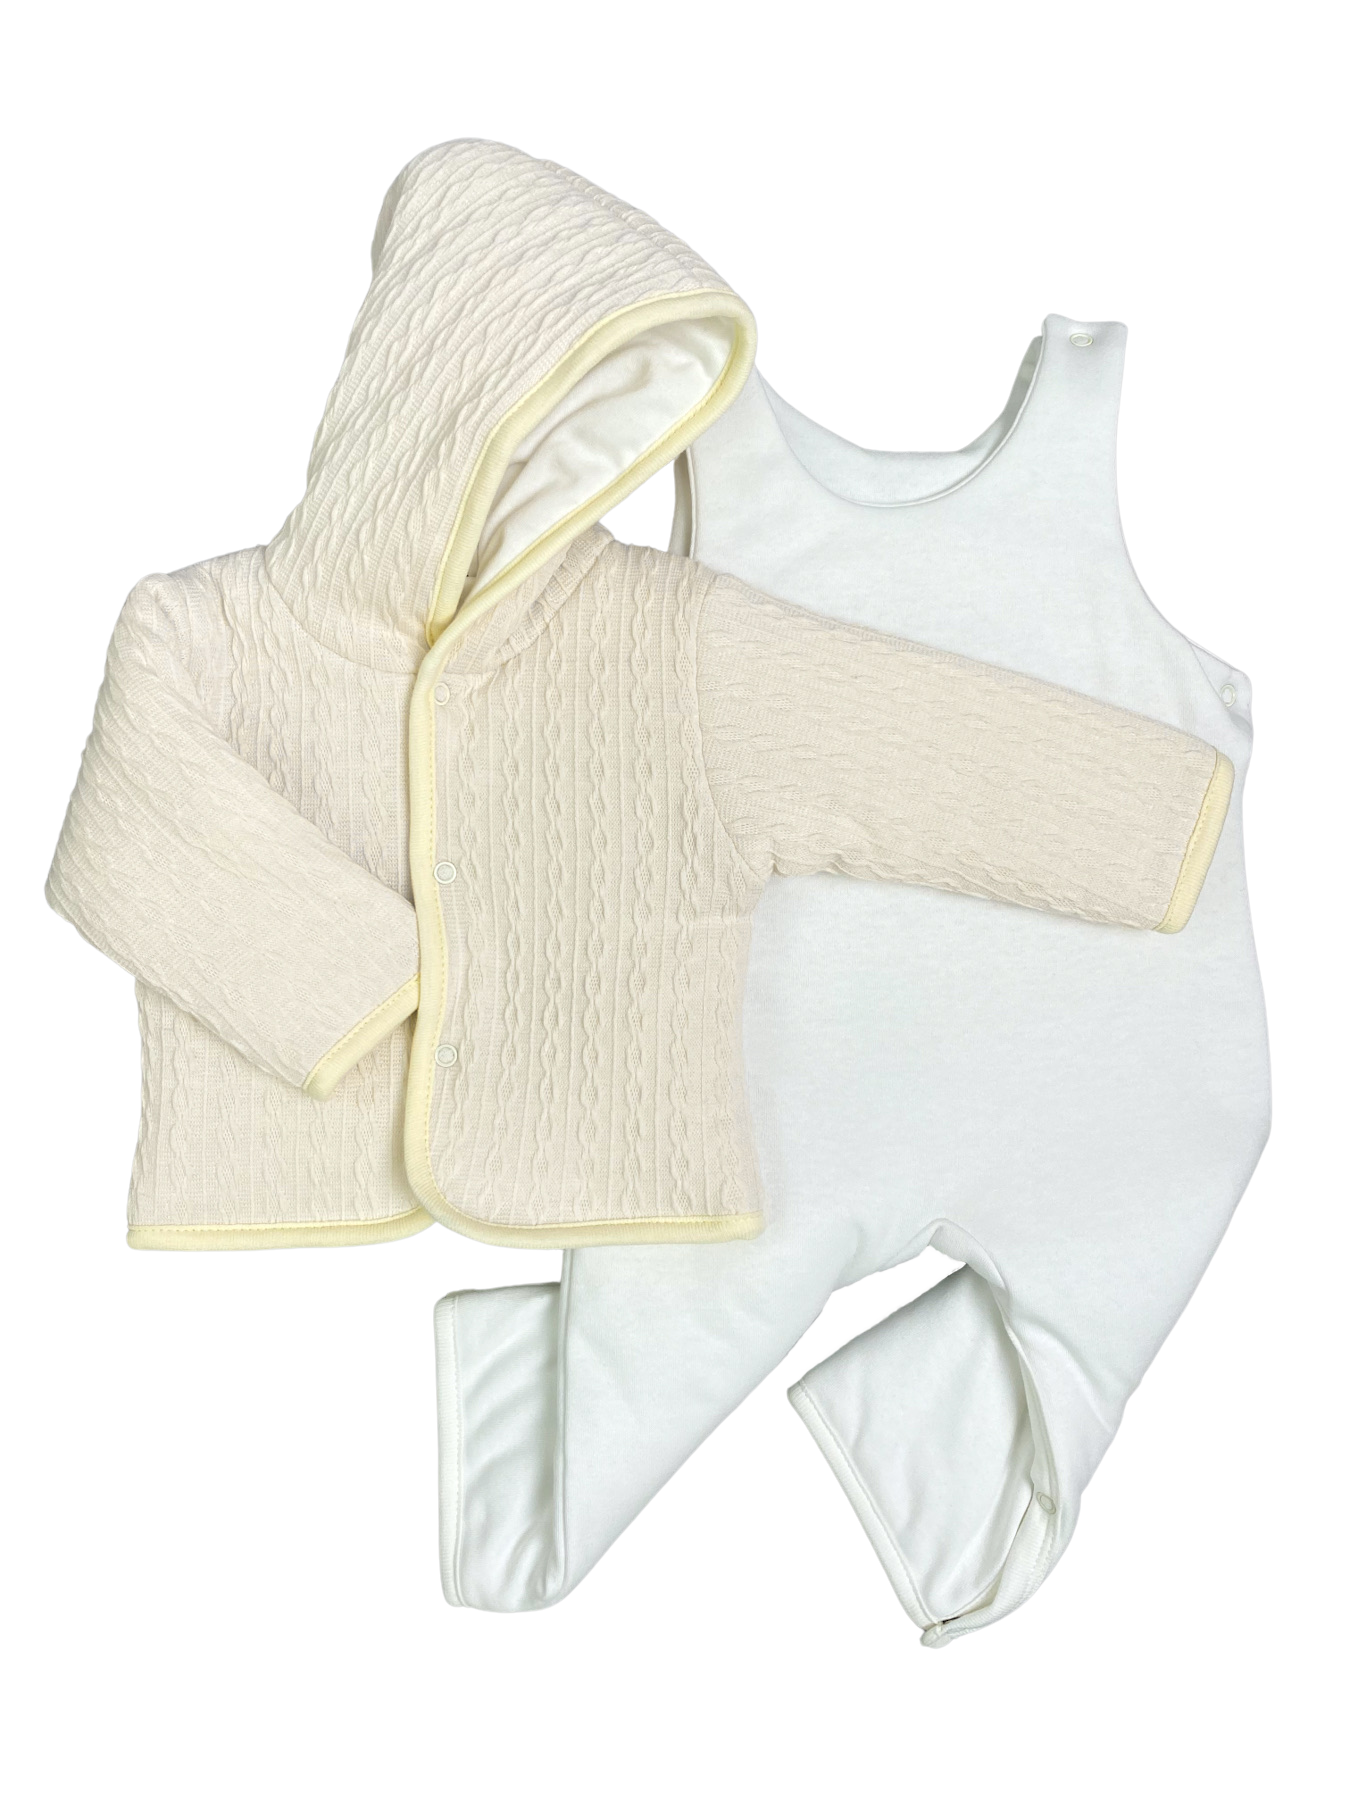 Комплект верхней одежды Clariss Вязаный микс, бежевый; белый, 62 комплект верхней одежды ad9315 brown 116